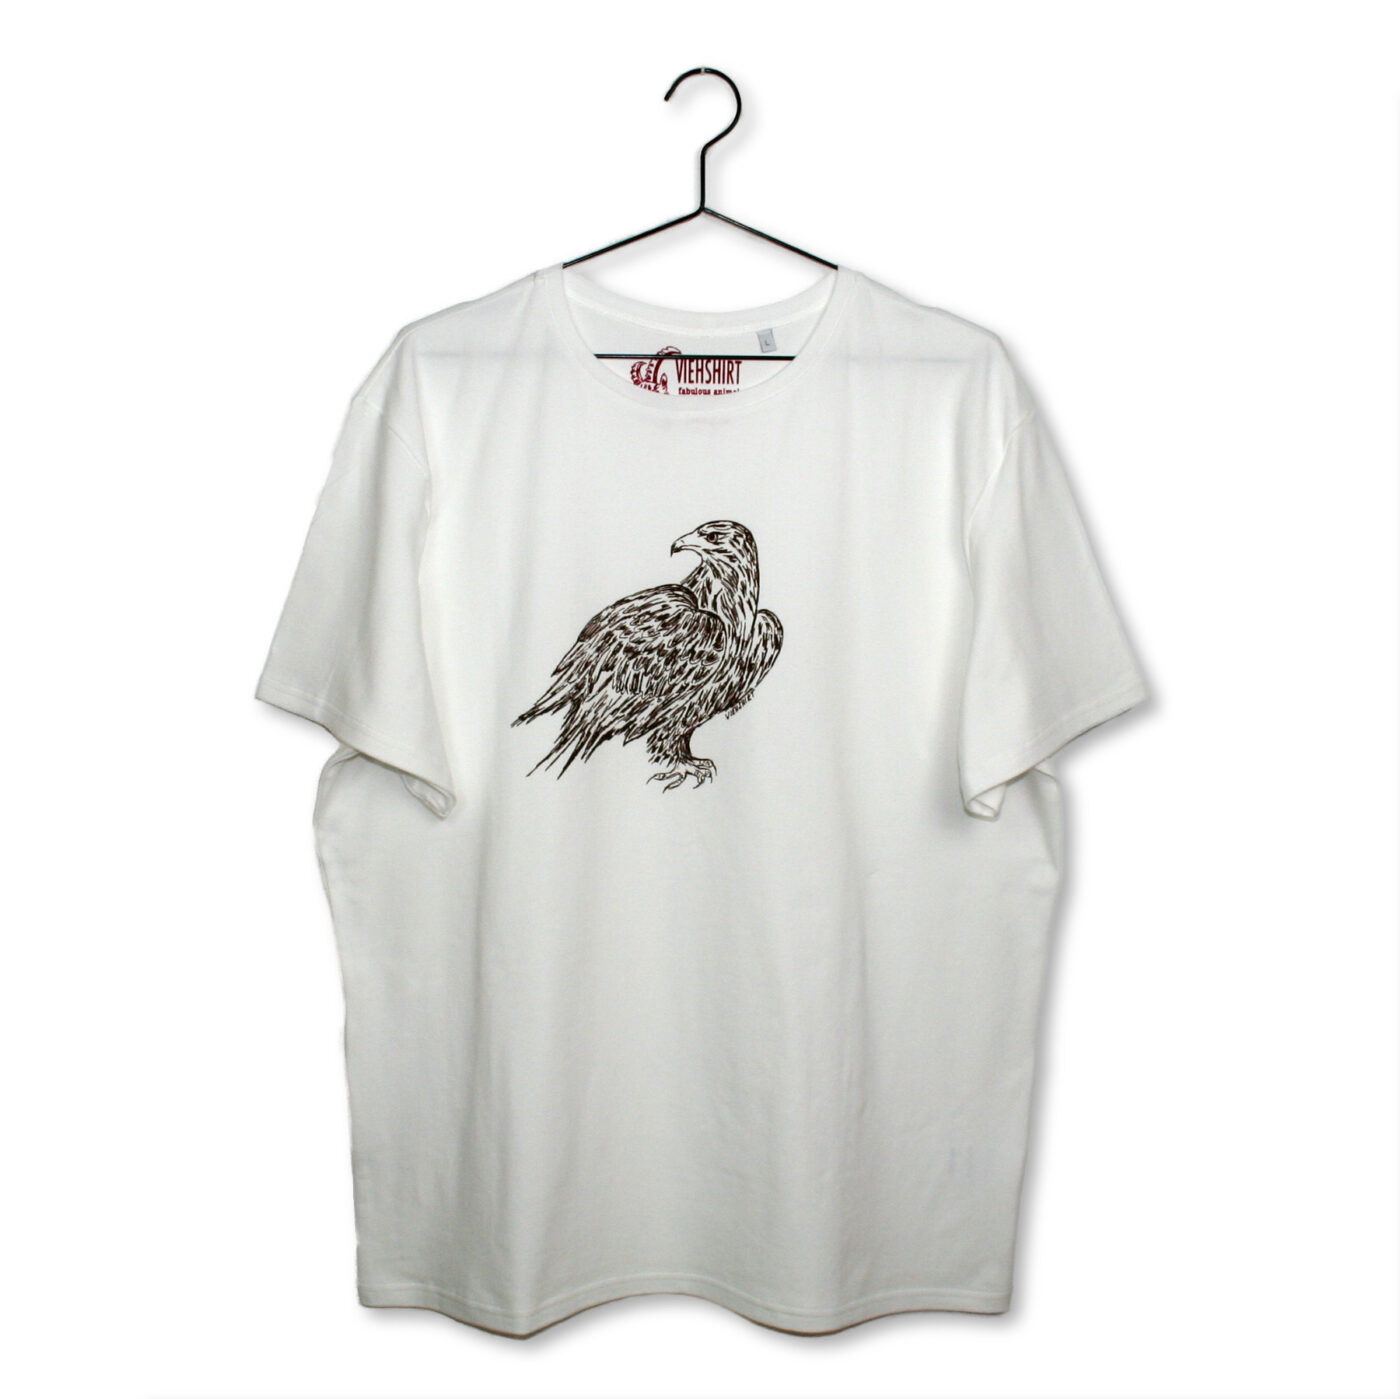 Weißes T-Shirt mit Siebdruckmotiv Adler